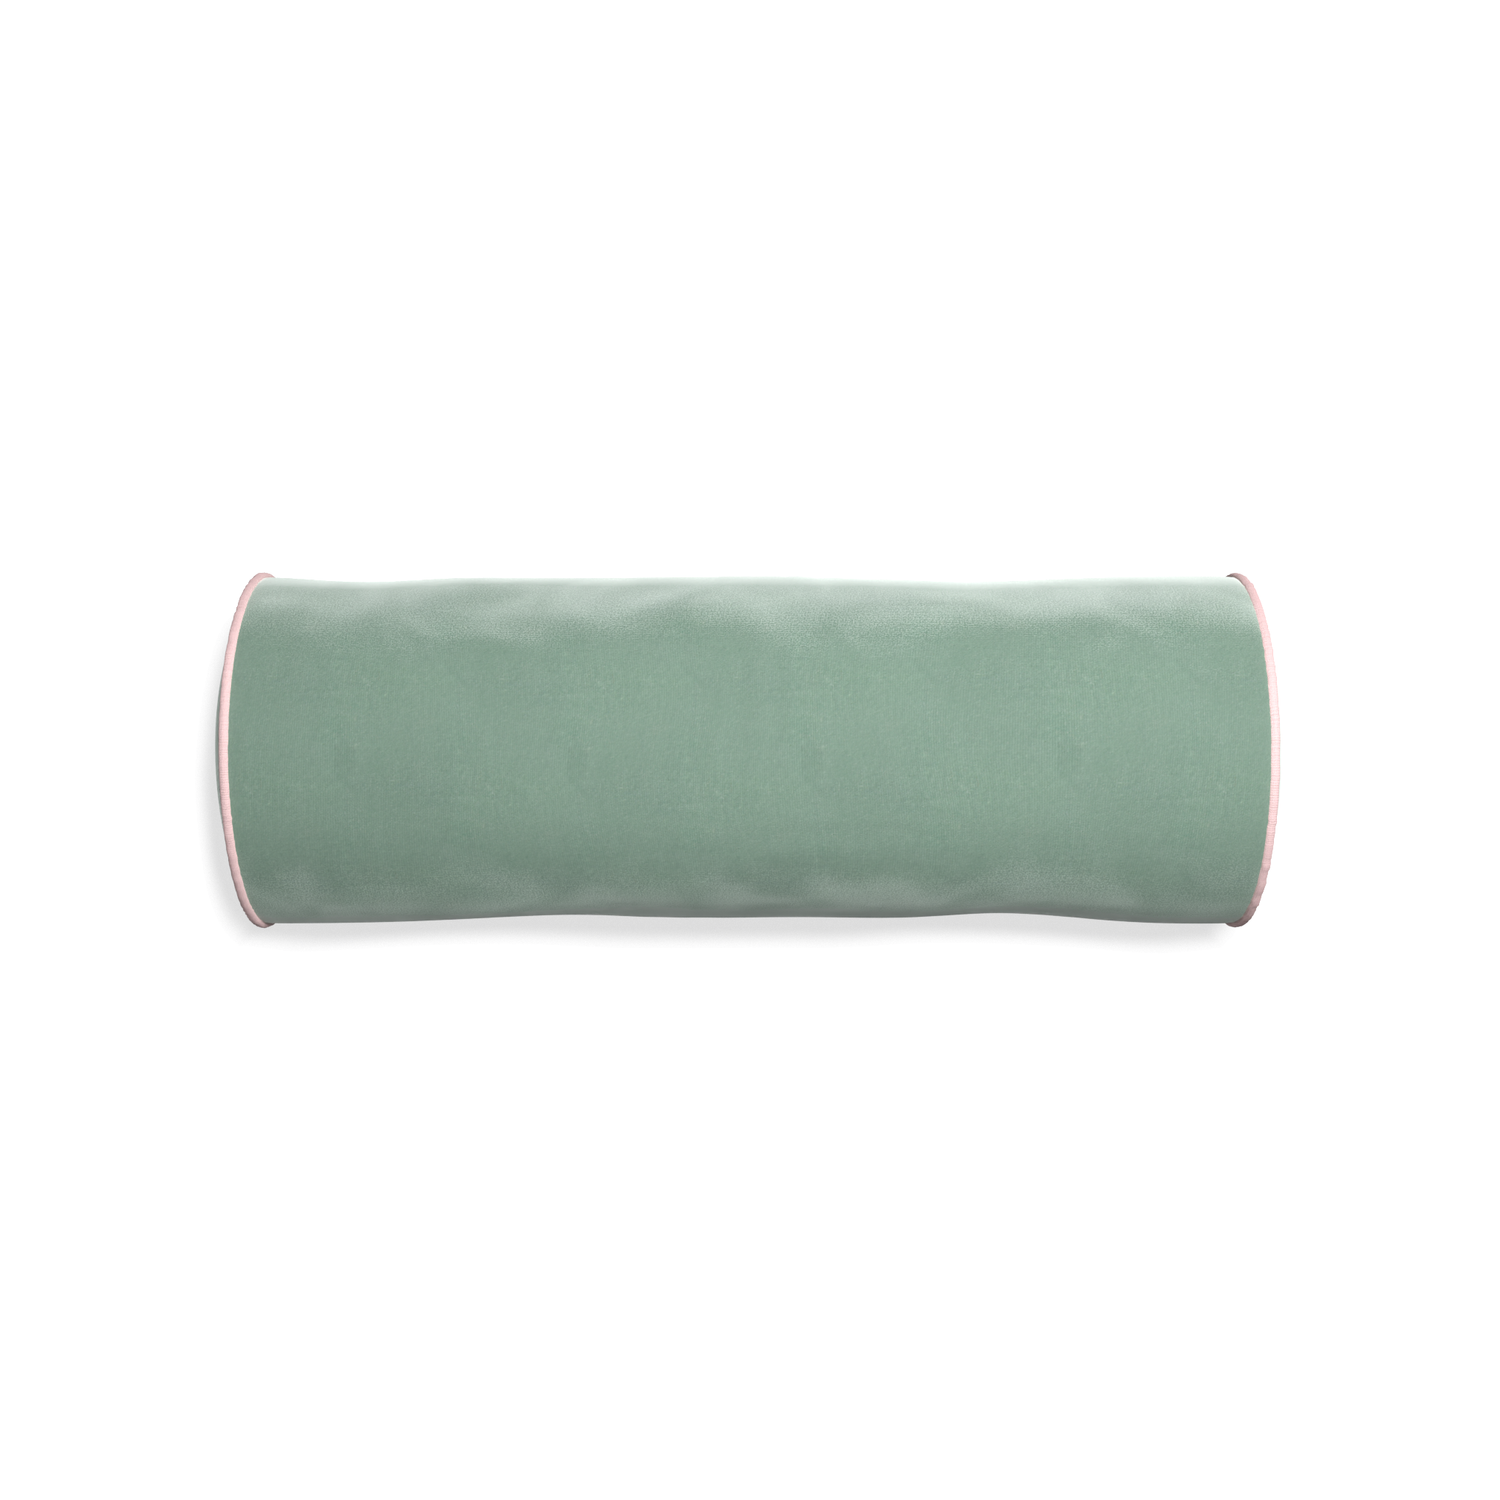 bolster blue green velvet pillow with light pink piping